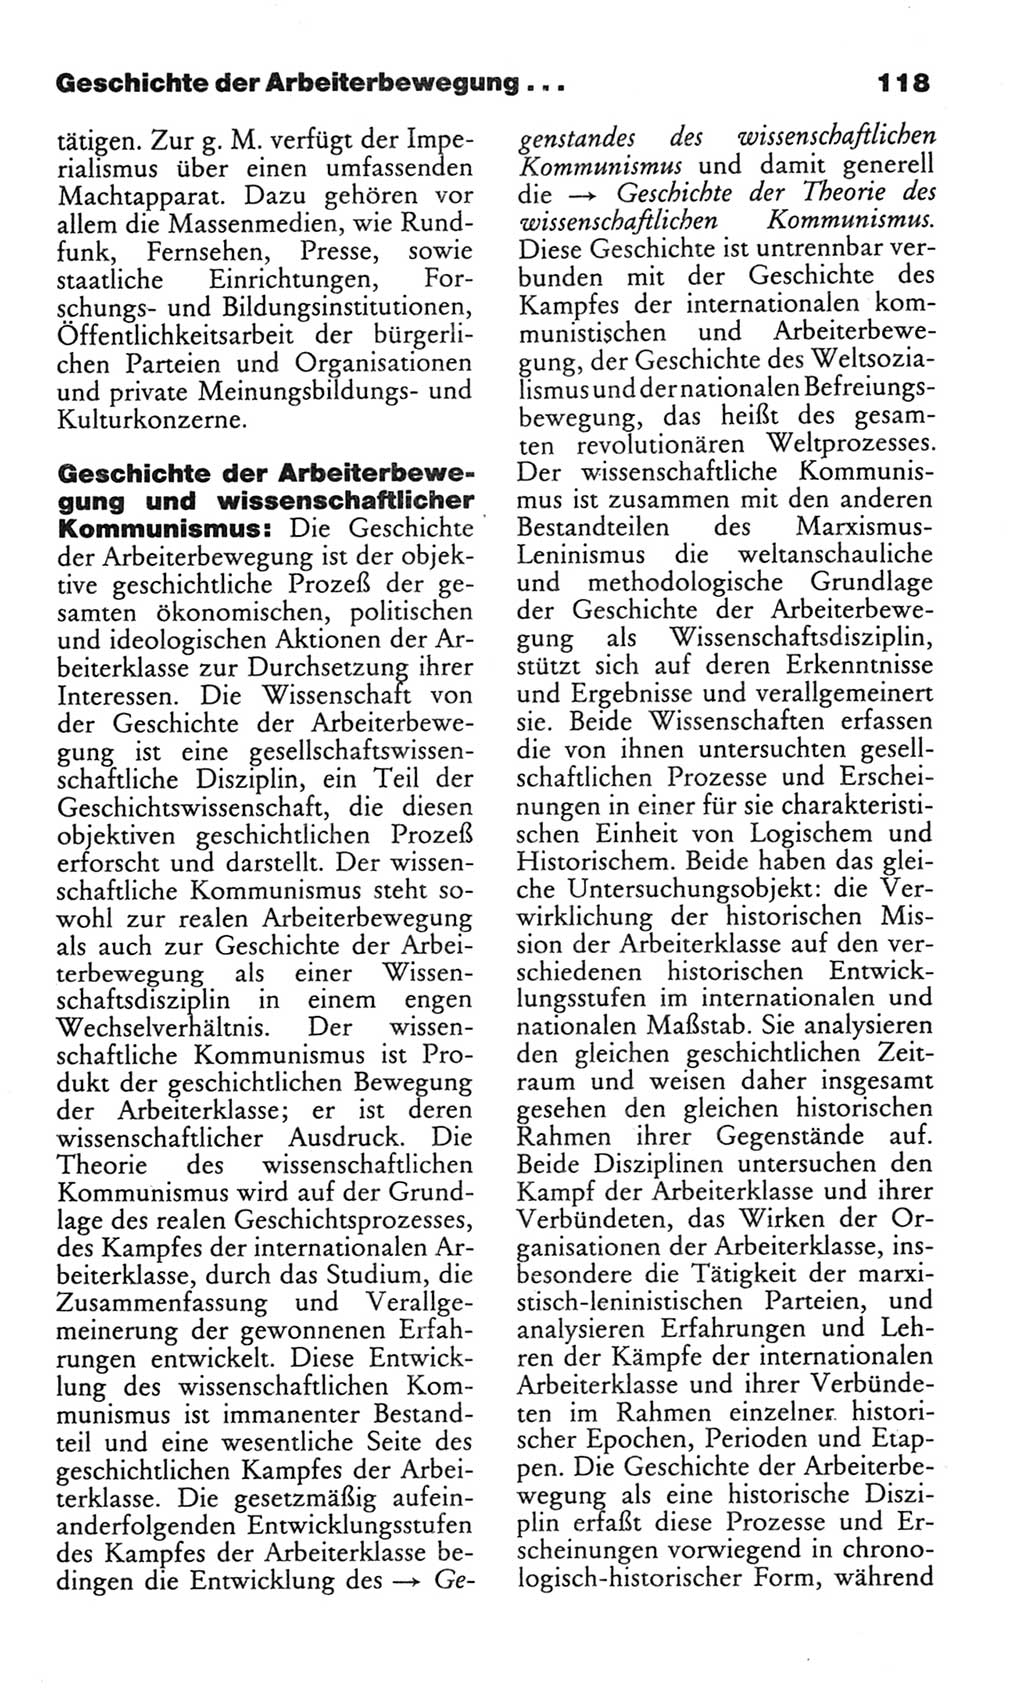 Wörterbuch des wissenschaftlichen Kommunismus [Deutsche Demokratische Republik (DDR)] 1982, Seite 118 (Wb. wiss. Komm. DDR 1982, S. 118)